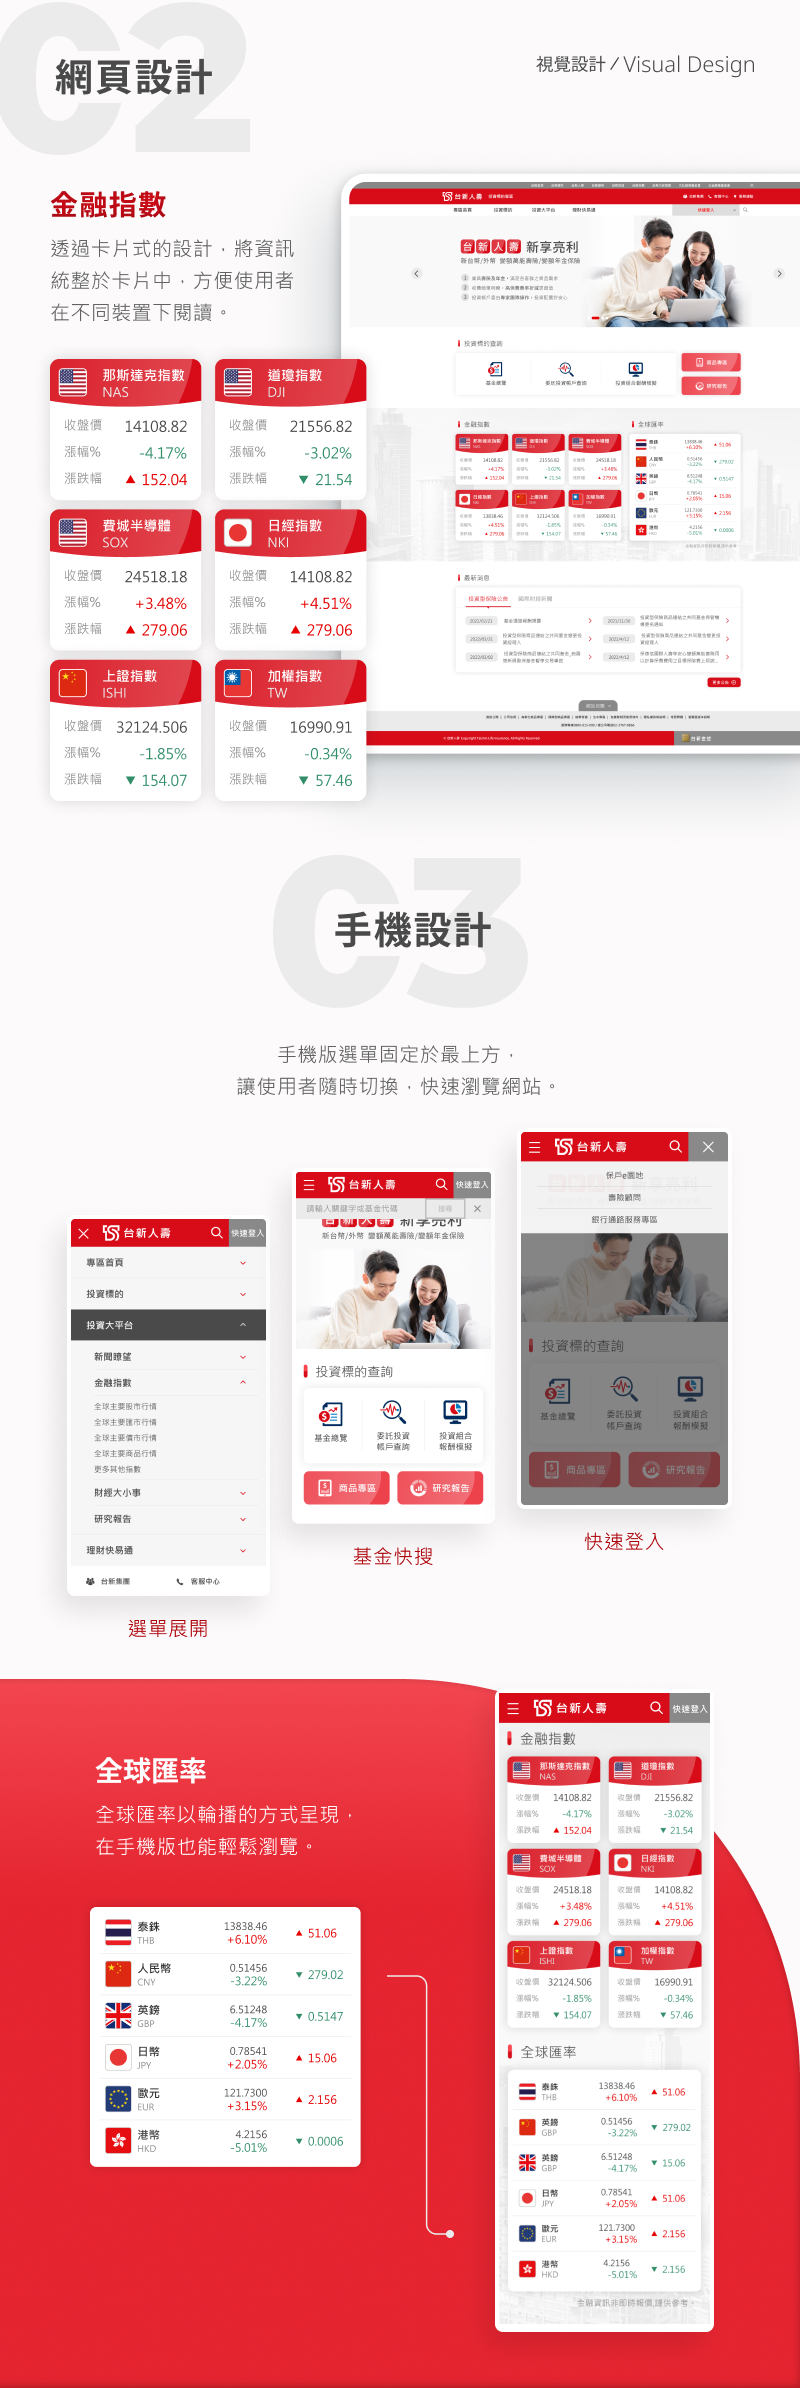 台新人壽 投資型專區 網站改版 網頁設計